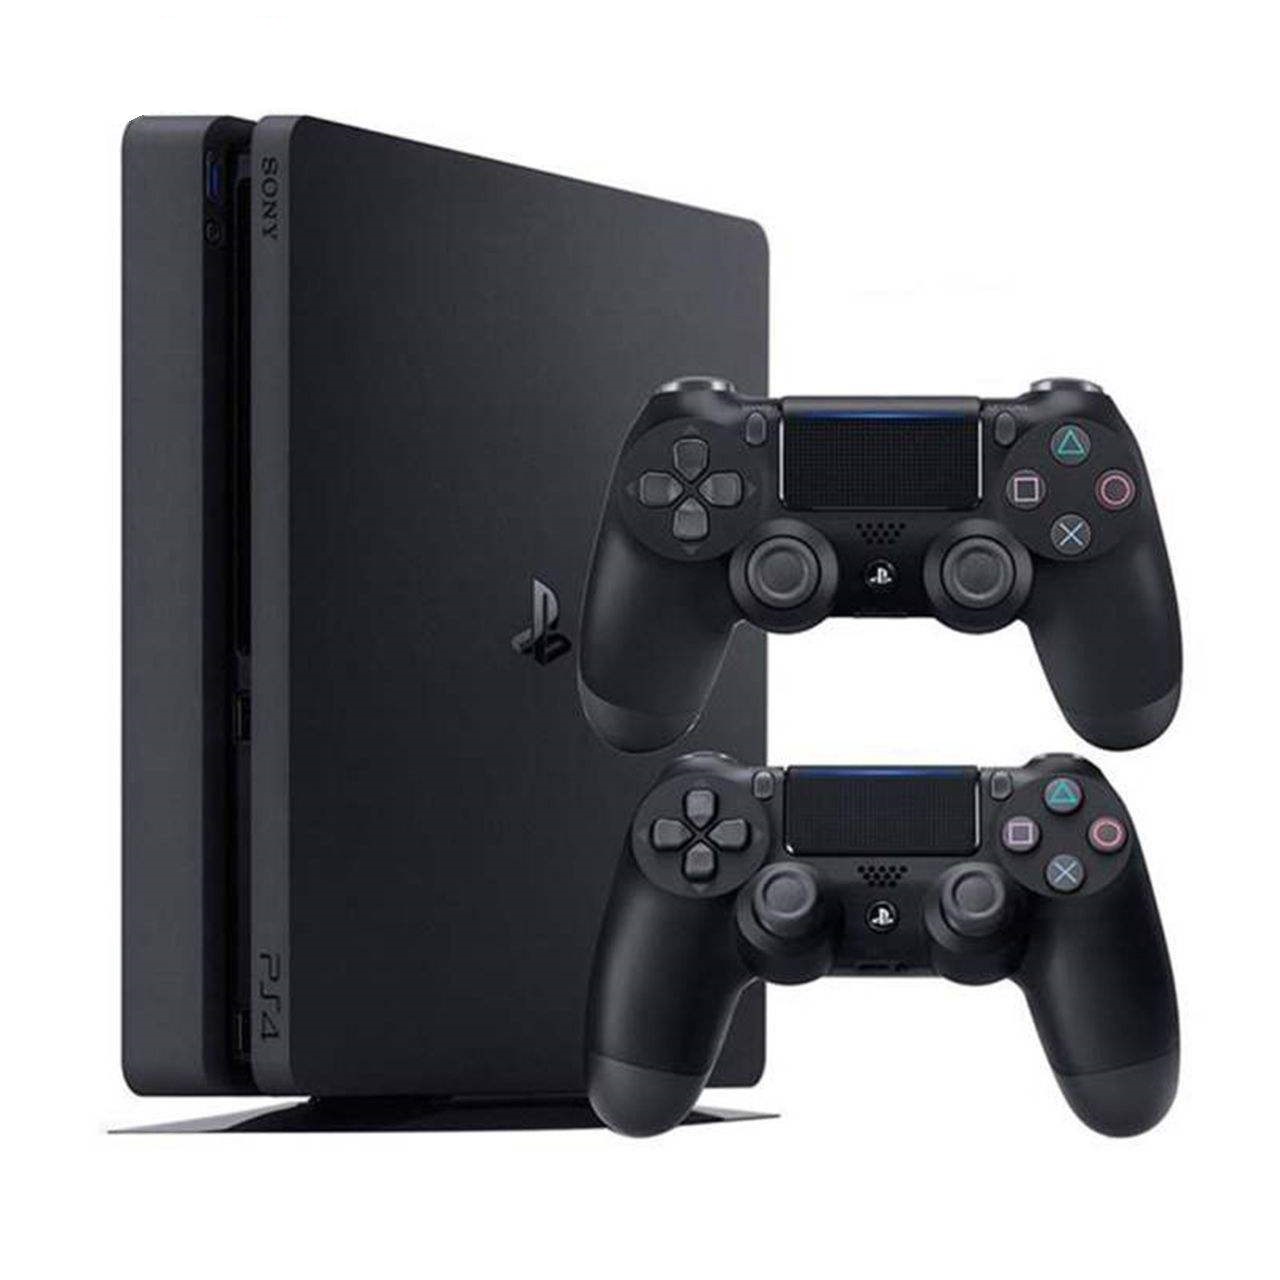 کنسول بازی سونی مدل Playstation 4 Slim کد Region 2 CUH-2216A ظرفیت 1 ترابایت